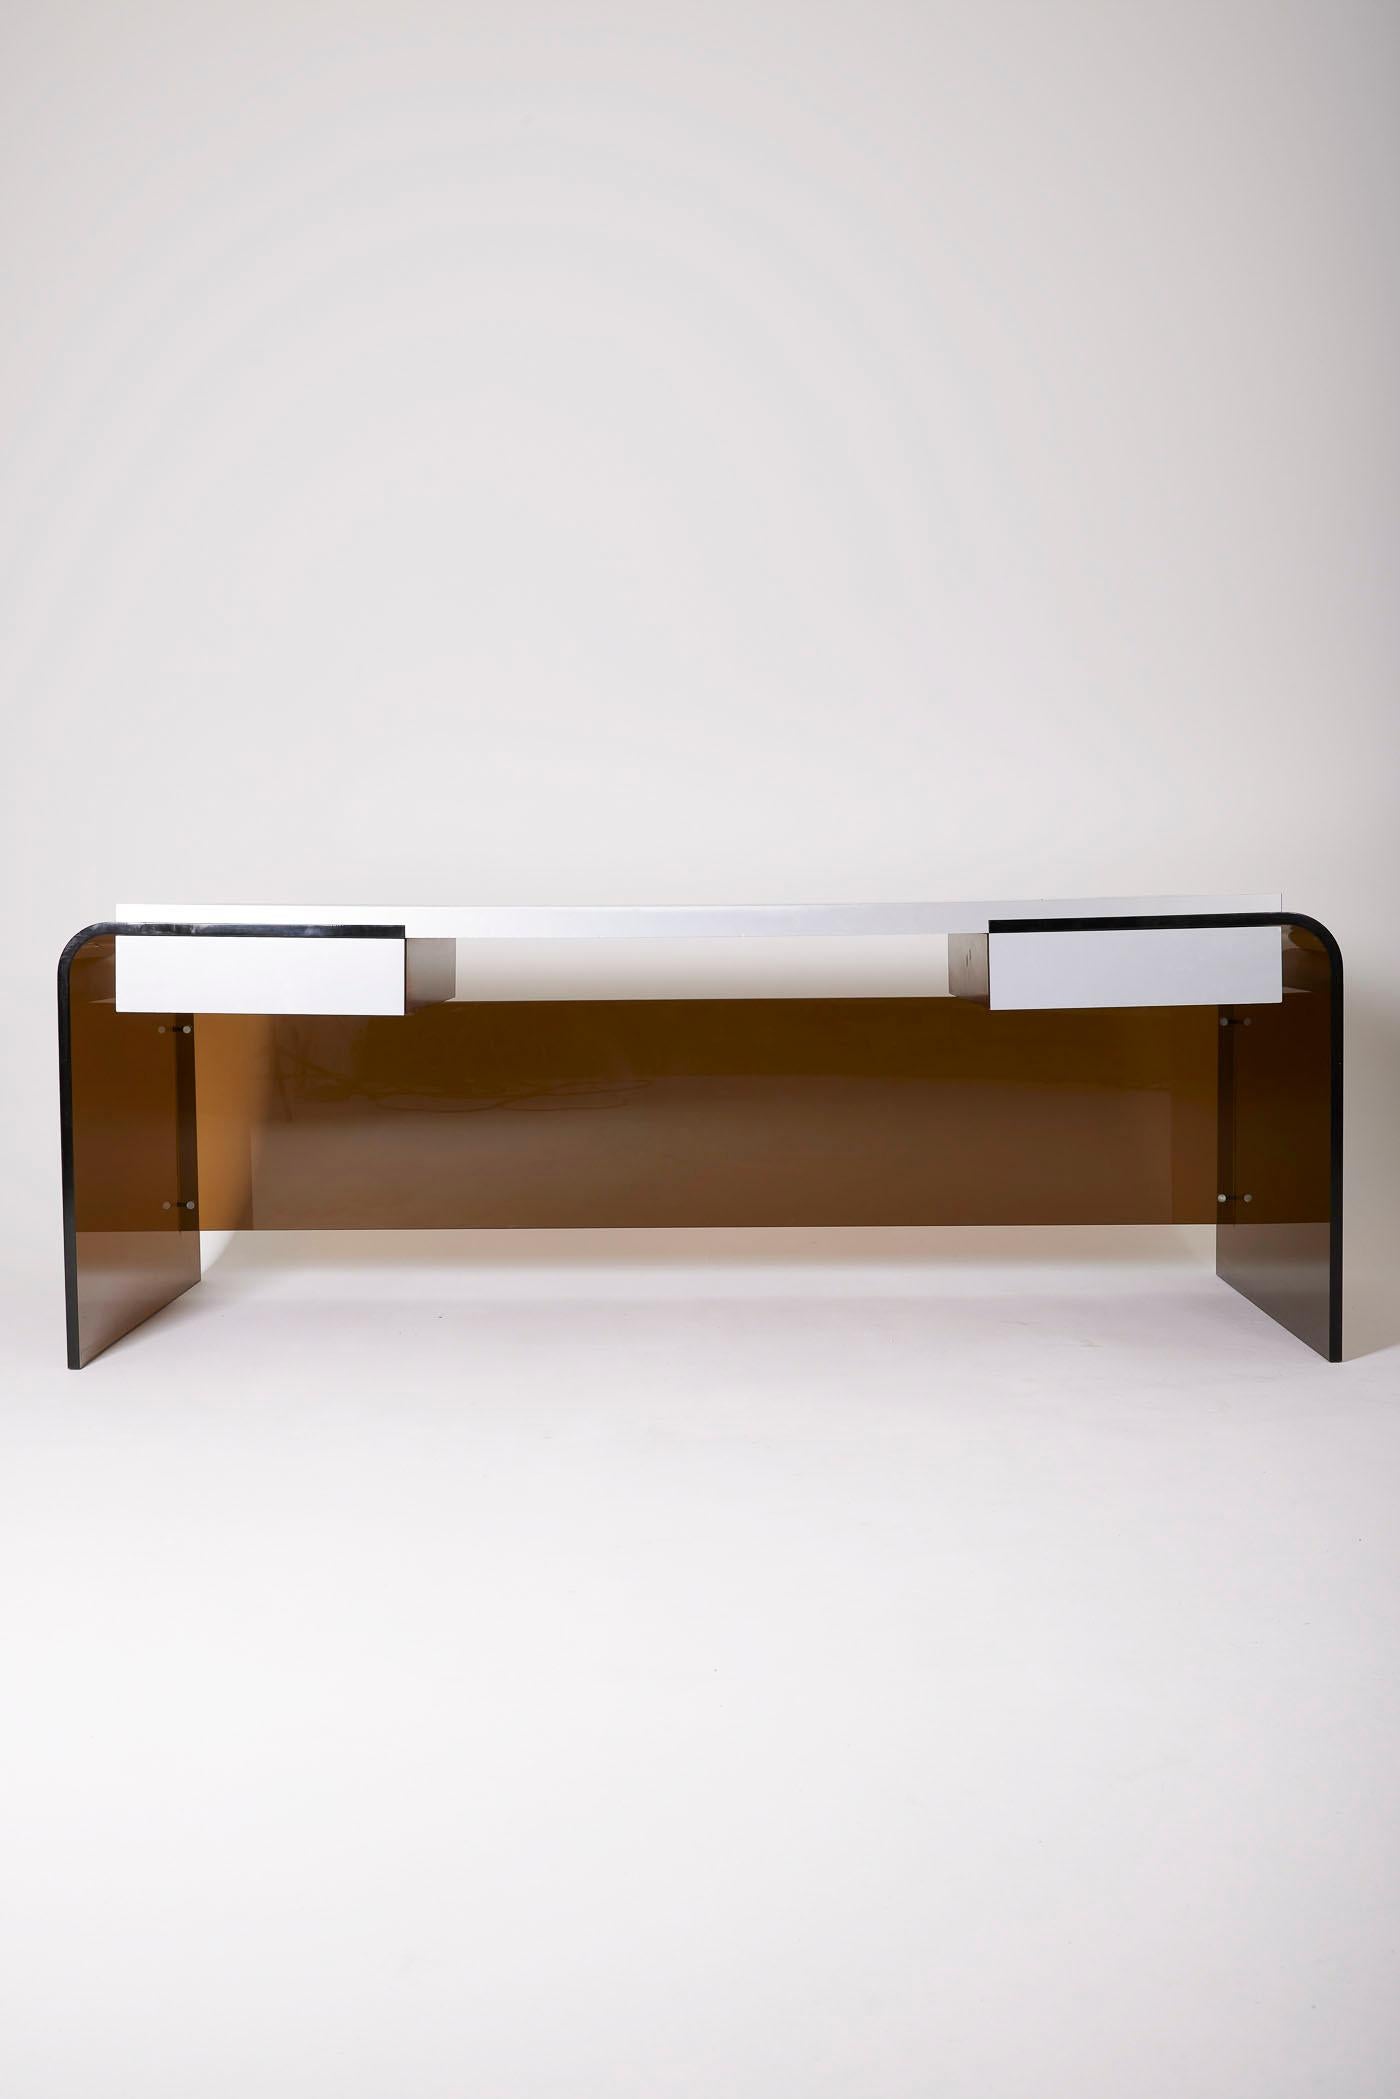 Großer Schreibtisch aus Acrylglas und Ebenholz, 1970er Jahre. Die Platte besteht aus Makassar-Ebenholz mit Details aus gebürstetem Stahl, der Sockel aus geräuchertem Plexiglas. Der Schreibtisch ist mit 2 Schubladen ausgestattet. Guter Zustand.
LP1274